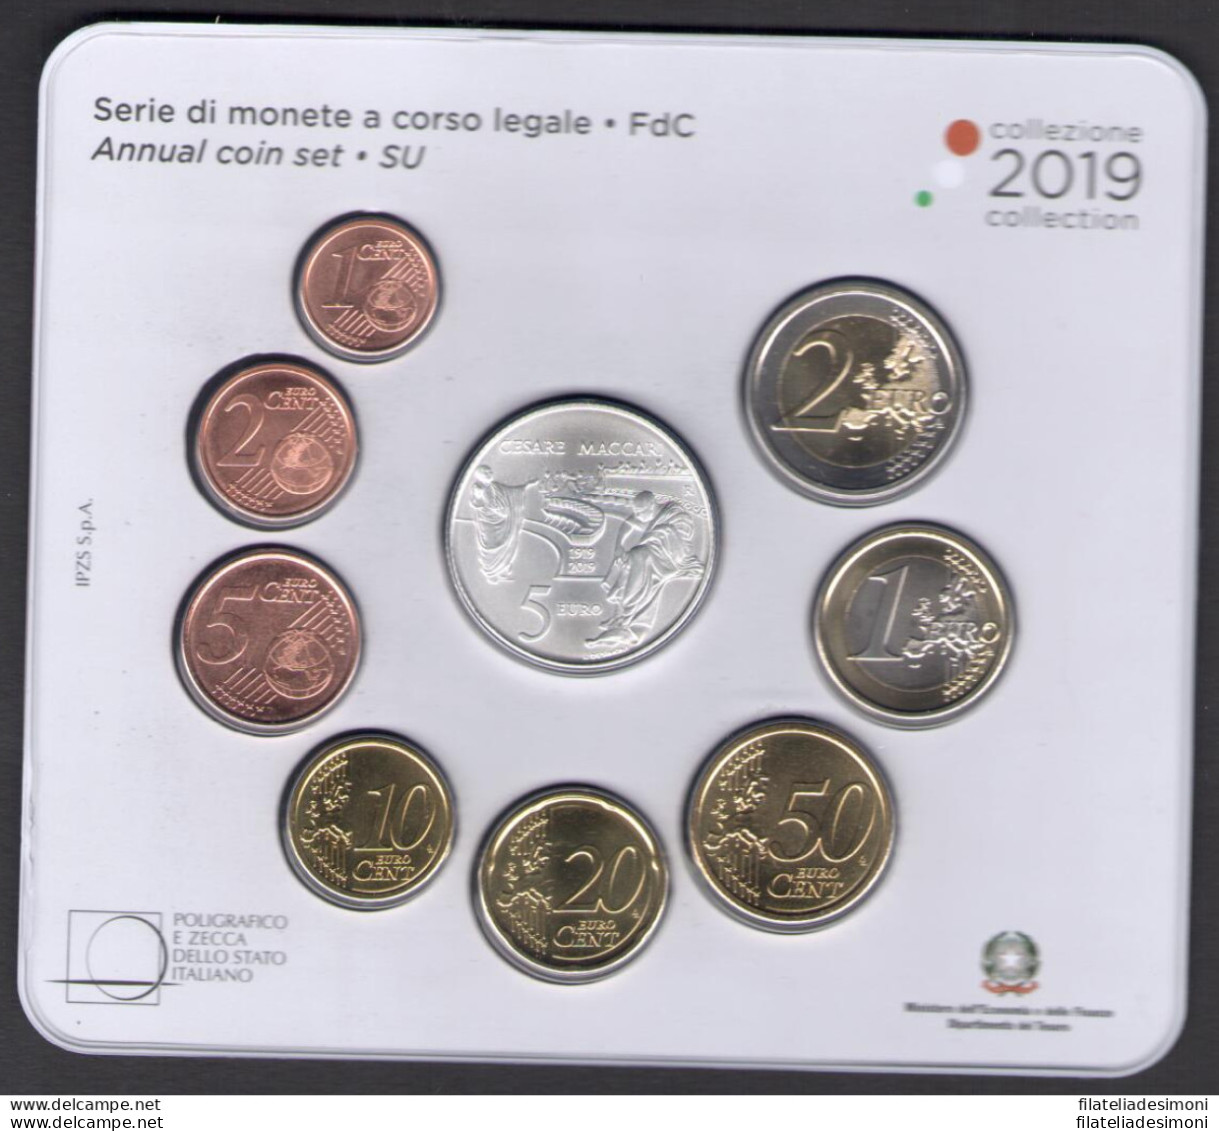 2019 Italia , Repubblica Italiana , Serie di Monete a Corso Legale , Cesare Macc